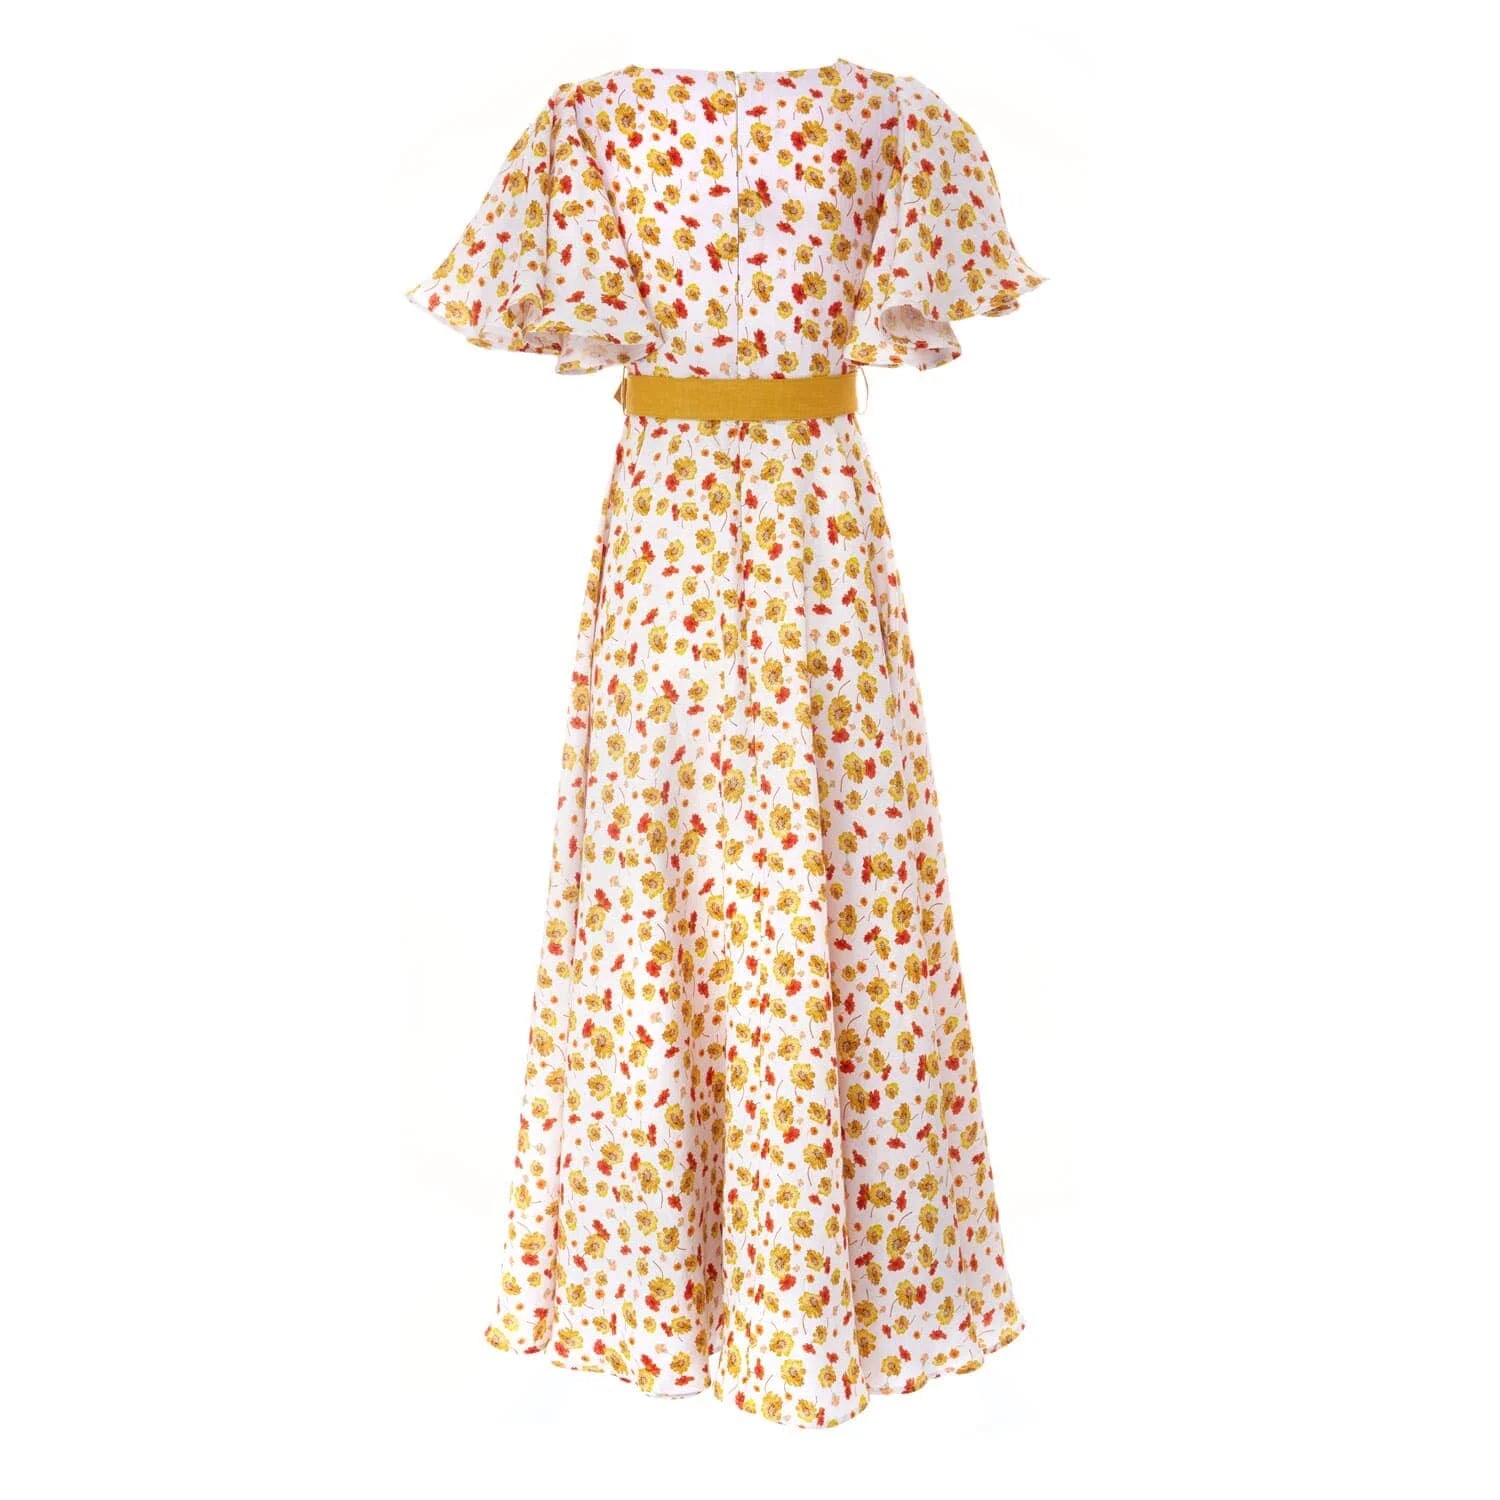 Orange summer linen dress - Dress